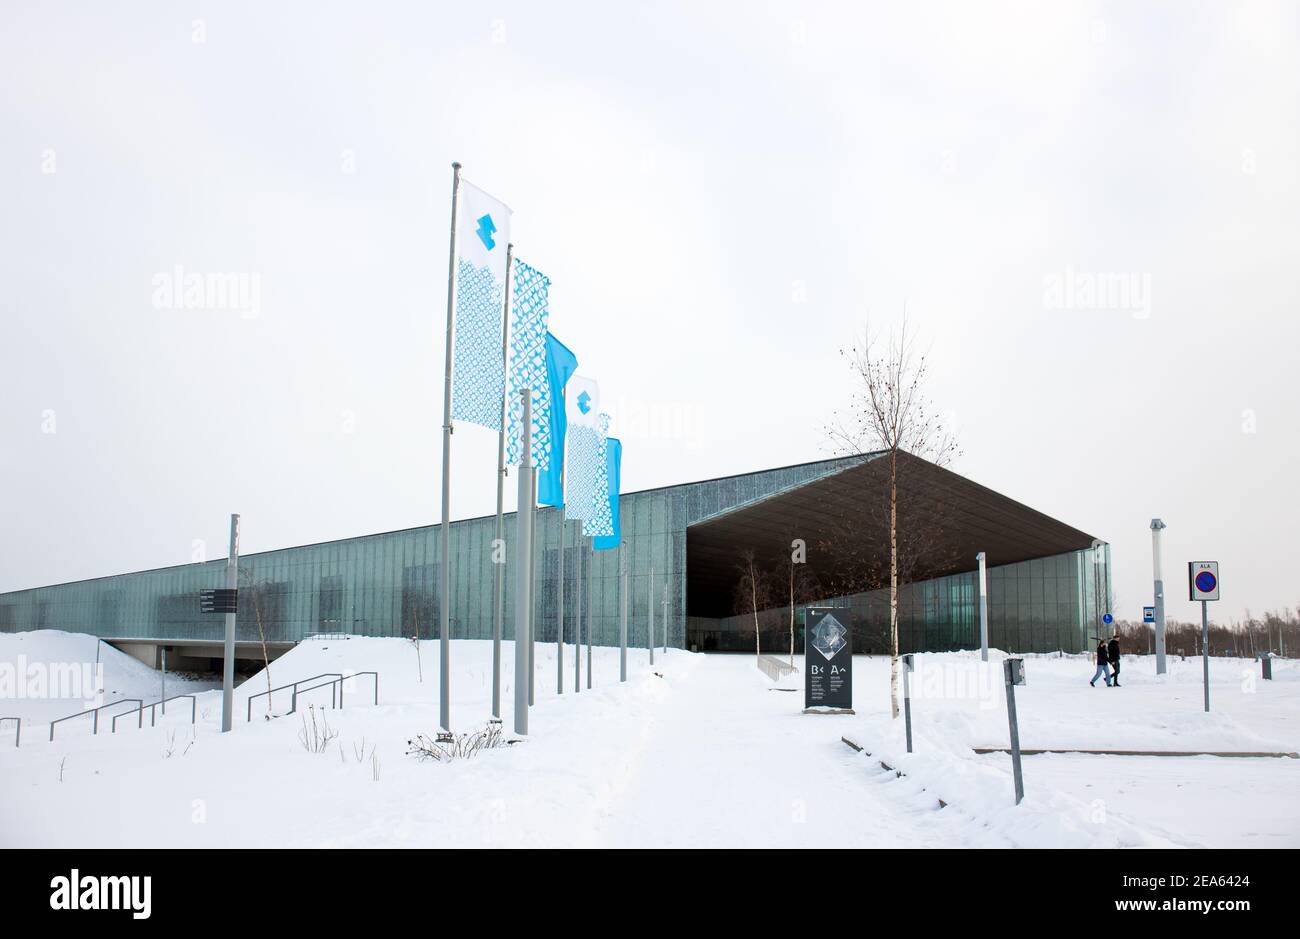 Tartu, Tartumaa, Estonia-06FEB2021: The Estonian National Museum ( Eesti rahva muuseum) in winter. Stock Photo